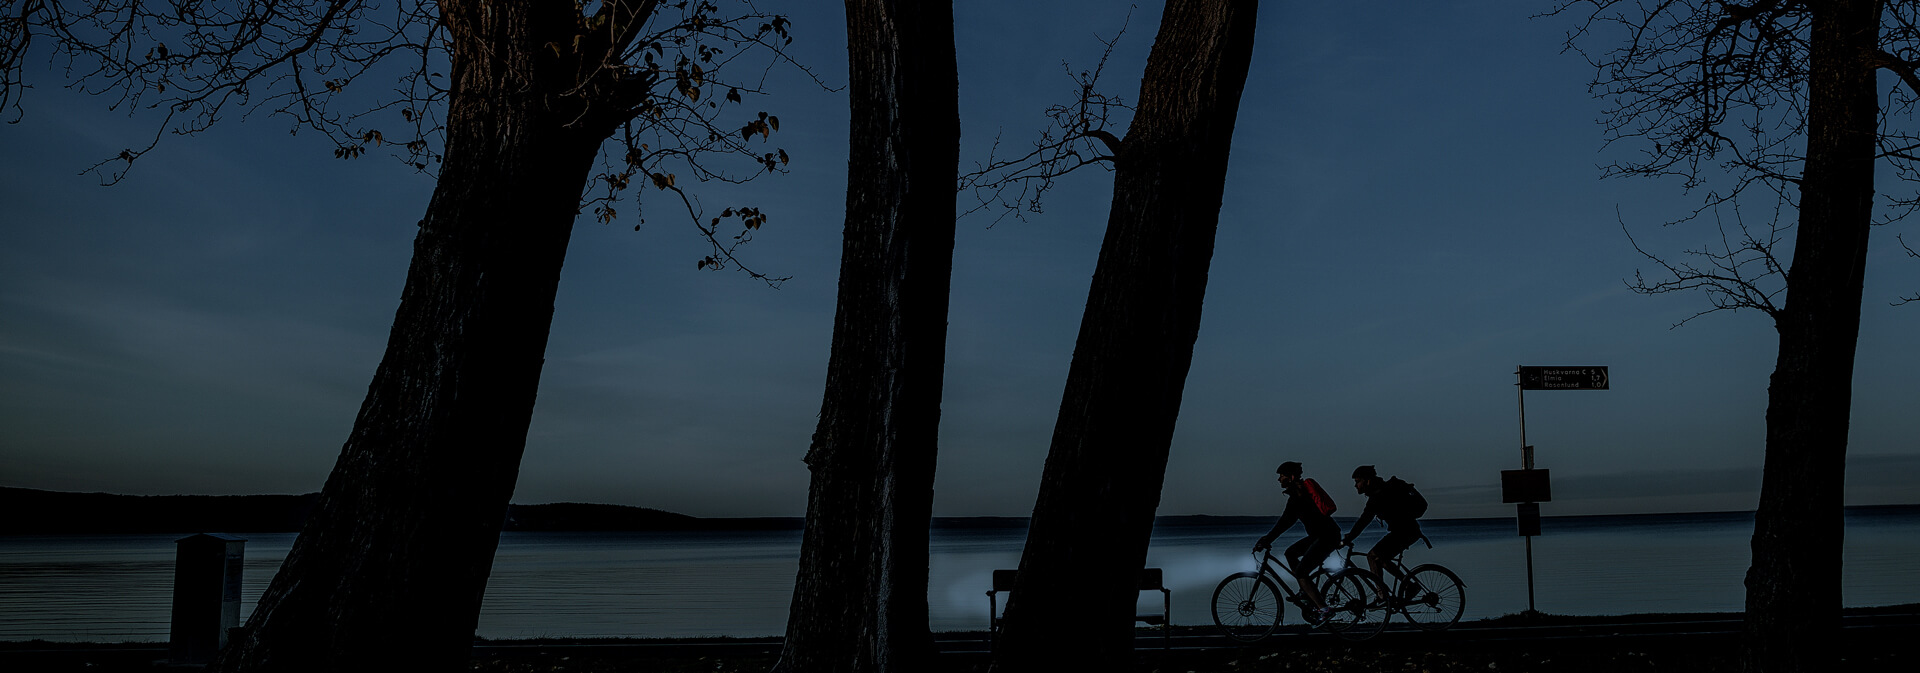 Cykla i mörkret